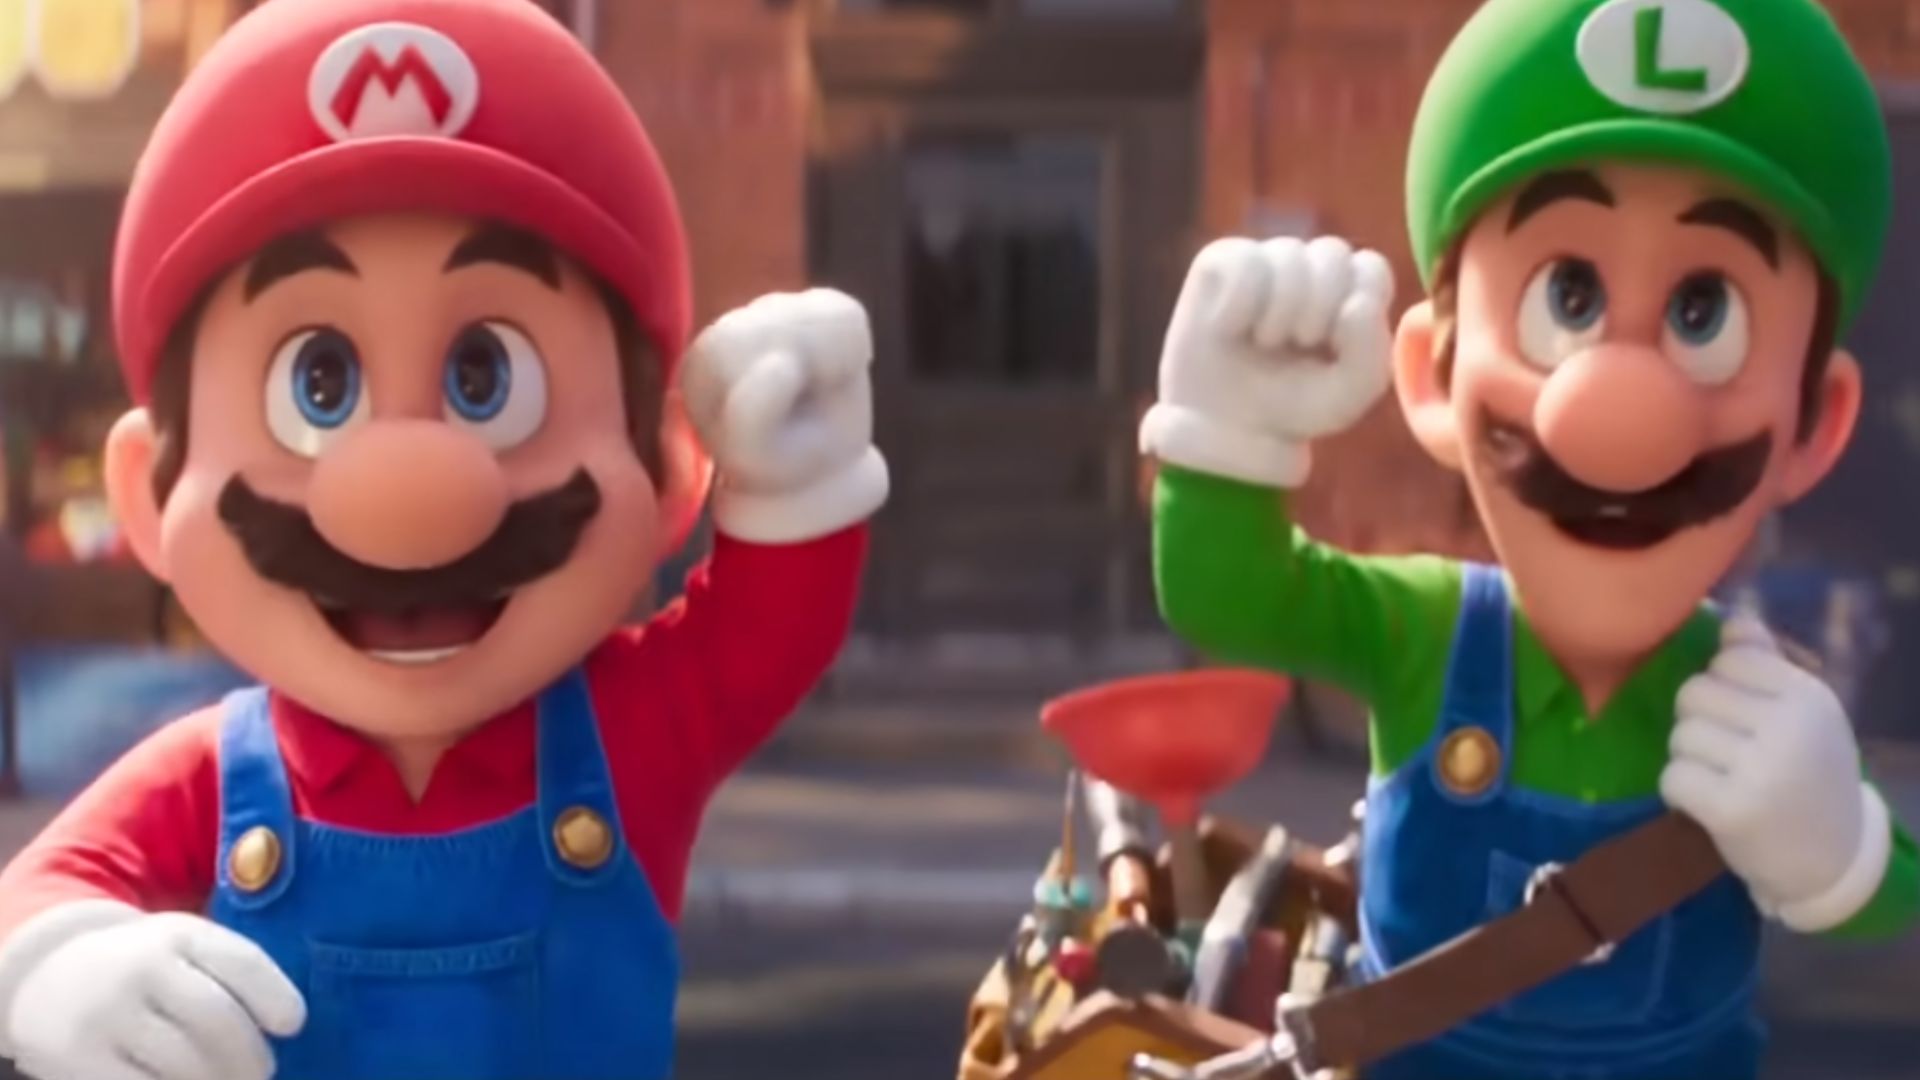  Filmas "Super Mario Bros." - trečias pagal pasaulinį kasos pelną!